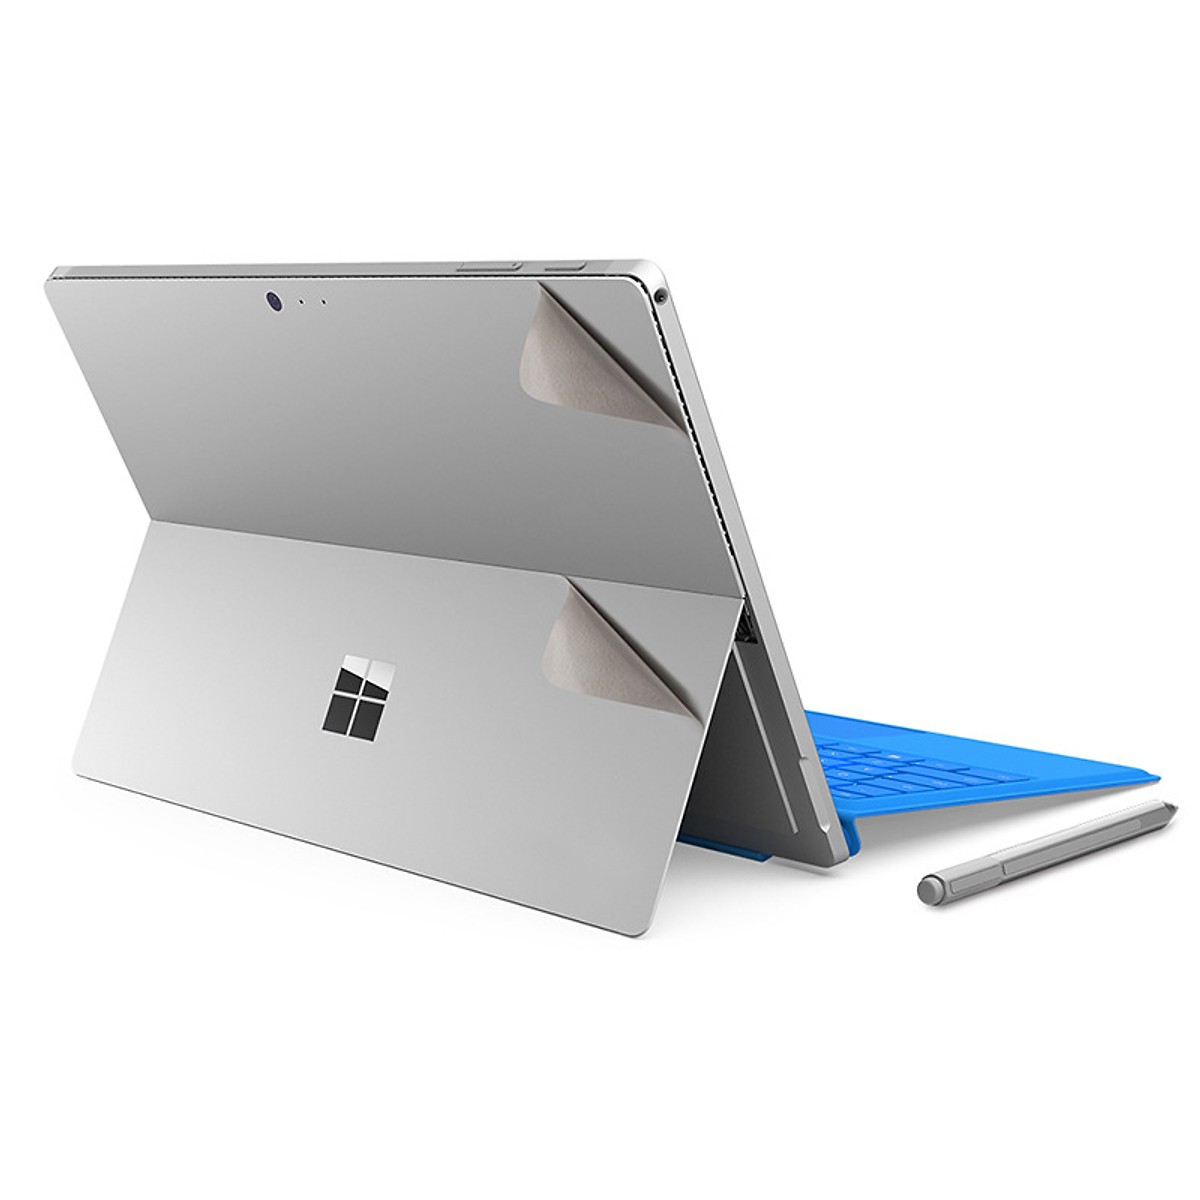 Miếng dán toàn thân JRC bảo vệ cho Surface Pro 7.6.5.4.3, Surface Go, Surface Laptop, Surface Book - Hàng nhập khẩu